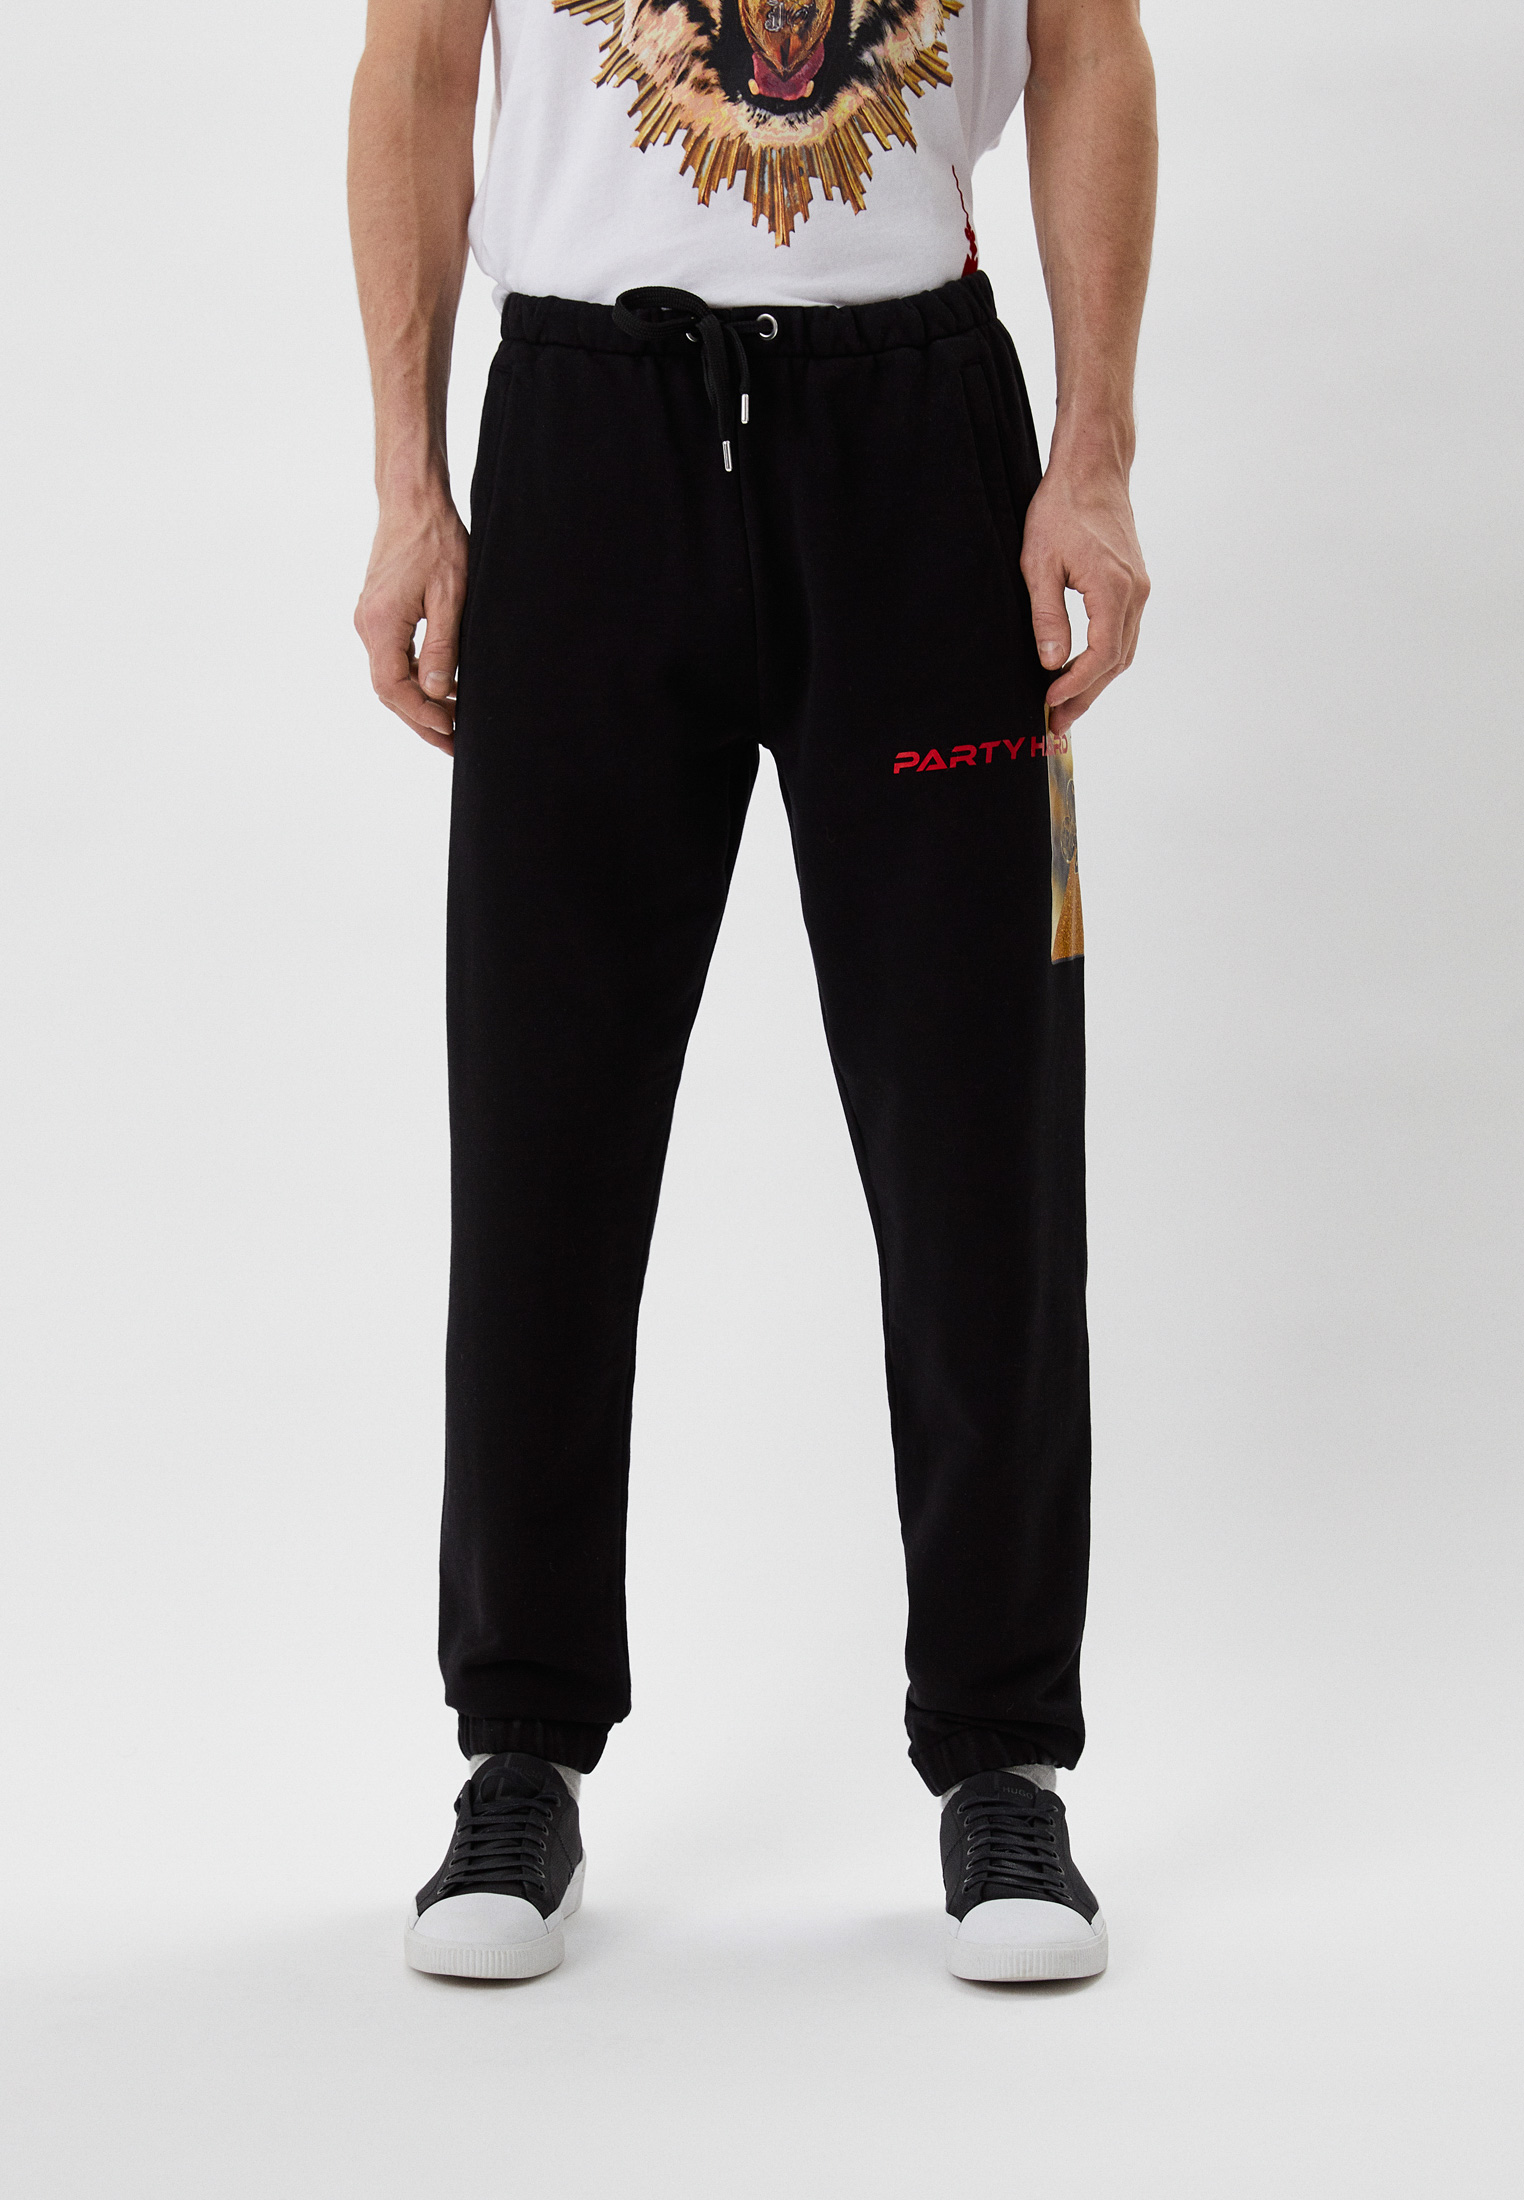 Мужские спортивные брюки Just Cavalli (Джаст Кавалли) S01KA0301N25189: изображение 1